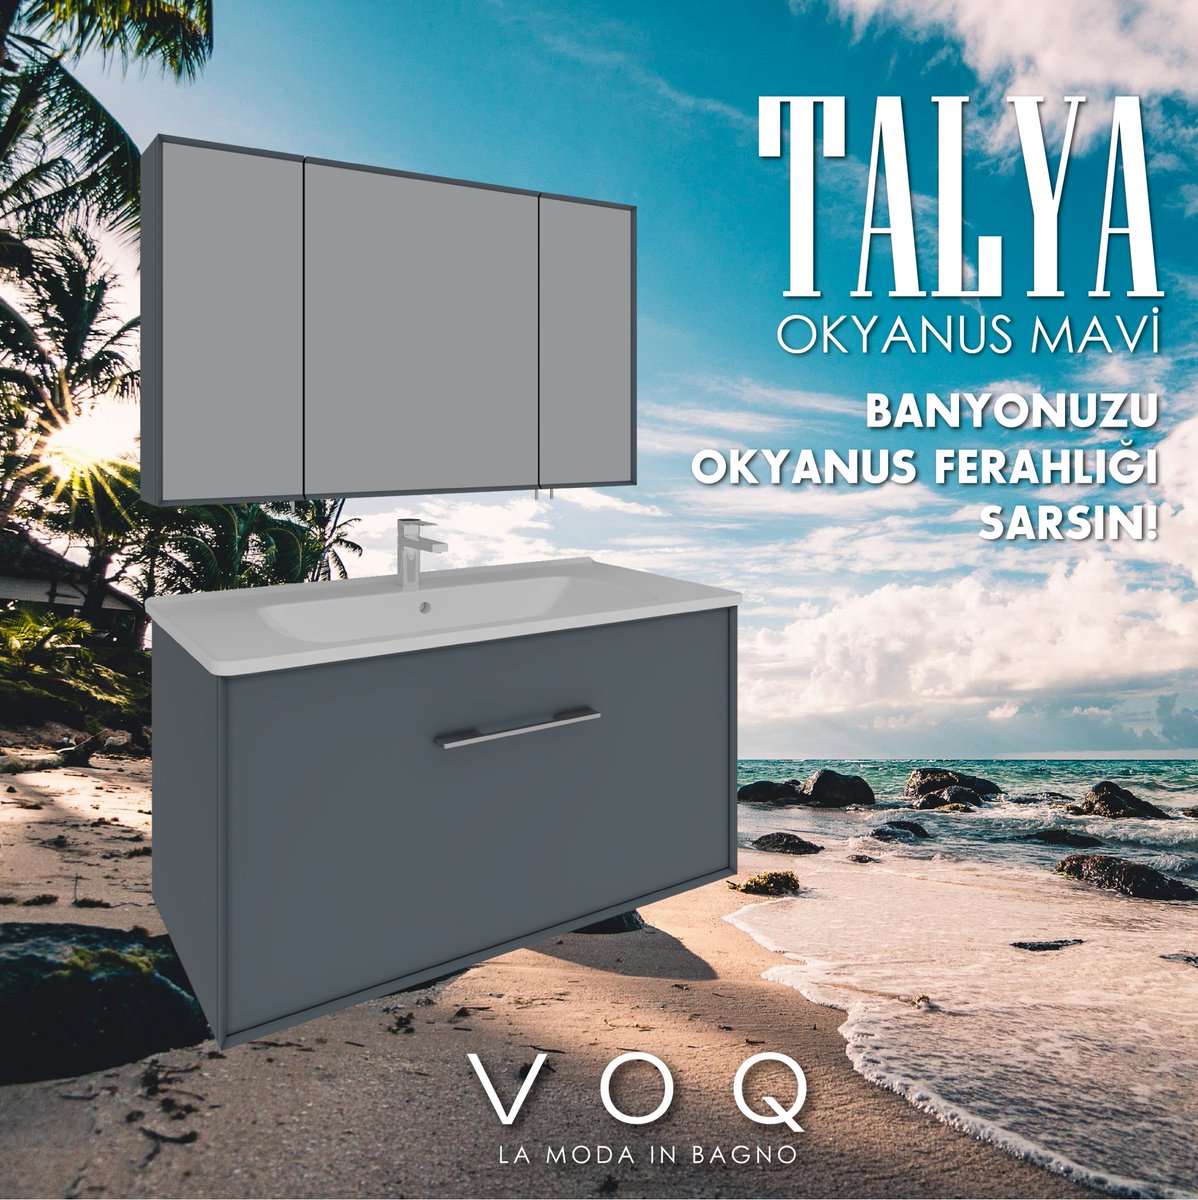 Talya okyanus mavi rengi ile bırakın banyonuzu okyanus ferahlığı sarsın!

Let the ocean freshness surround your bathroom with Talya ocean blue color!

#voq #voqbagno #lamodainbagno #arredobagno #bathroomfurniture #banyomobilyası #talya